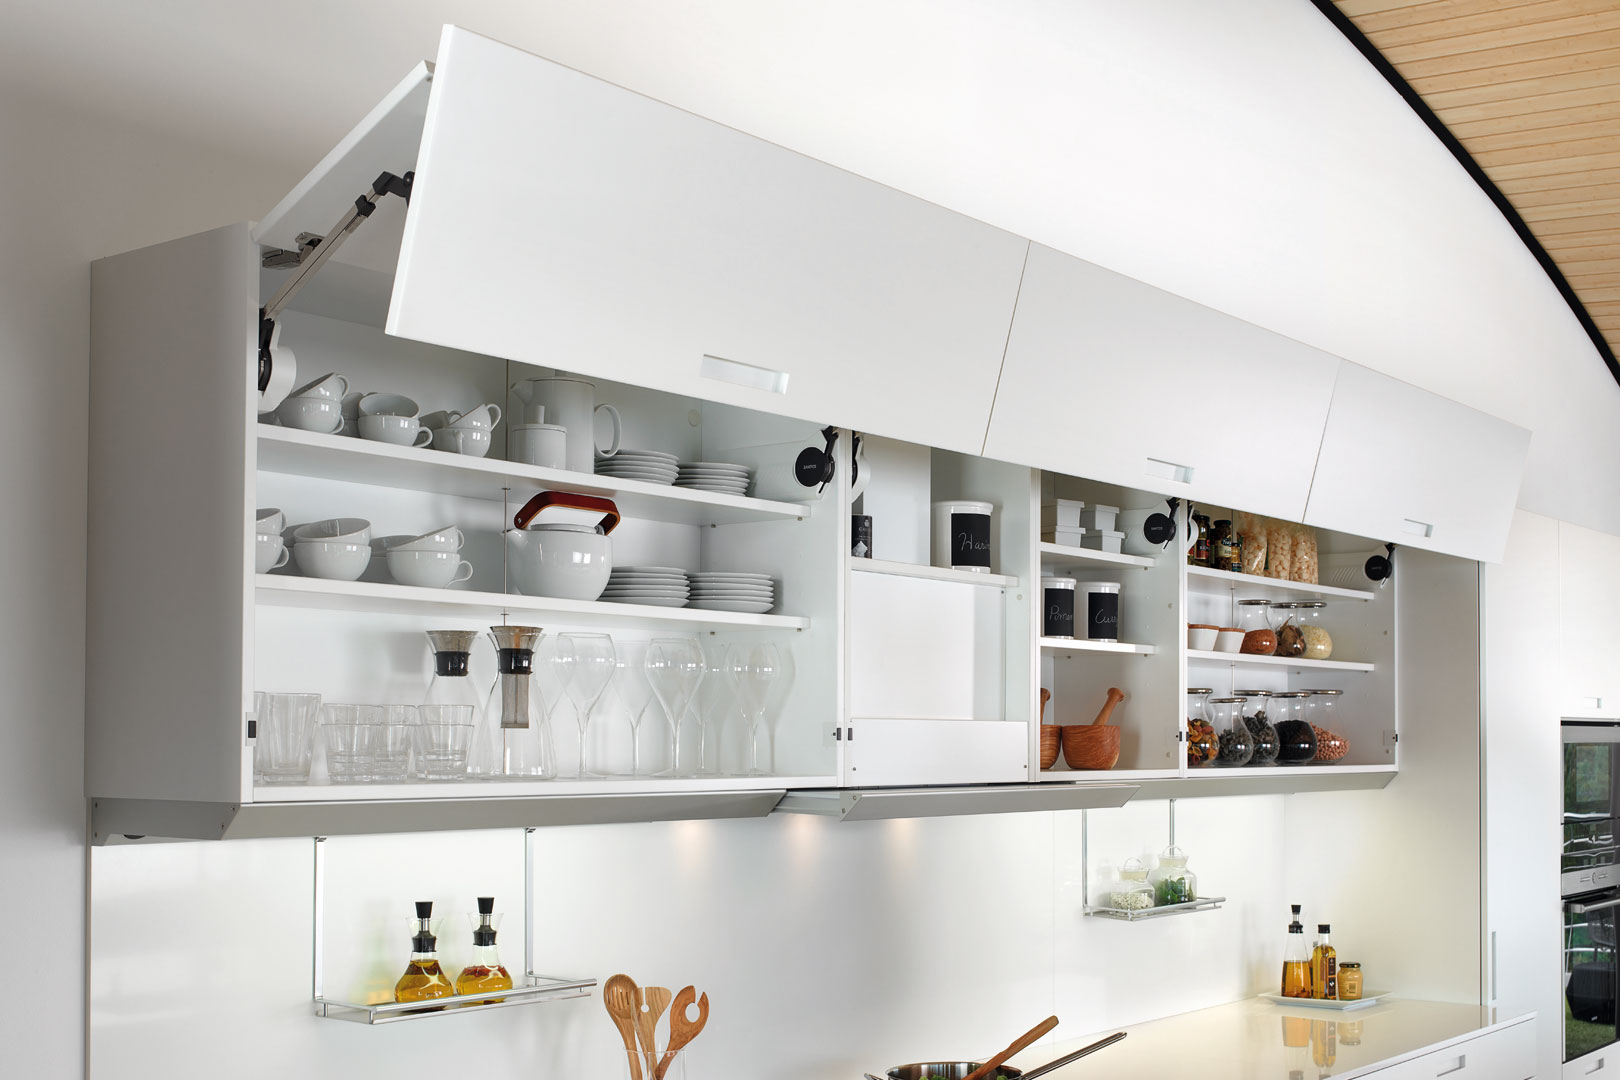 Cómo distribuir el interior de los muebles de cocina?